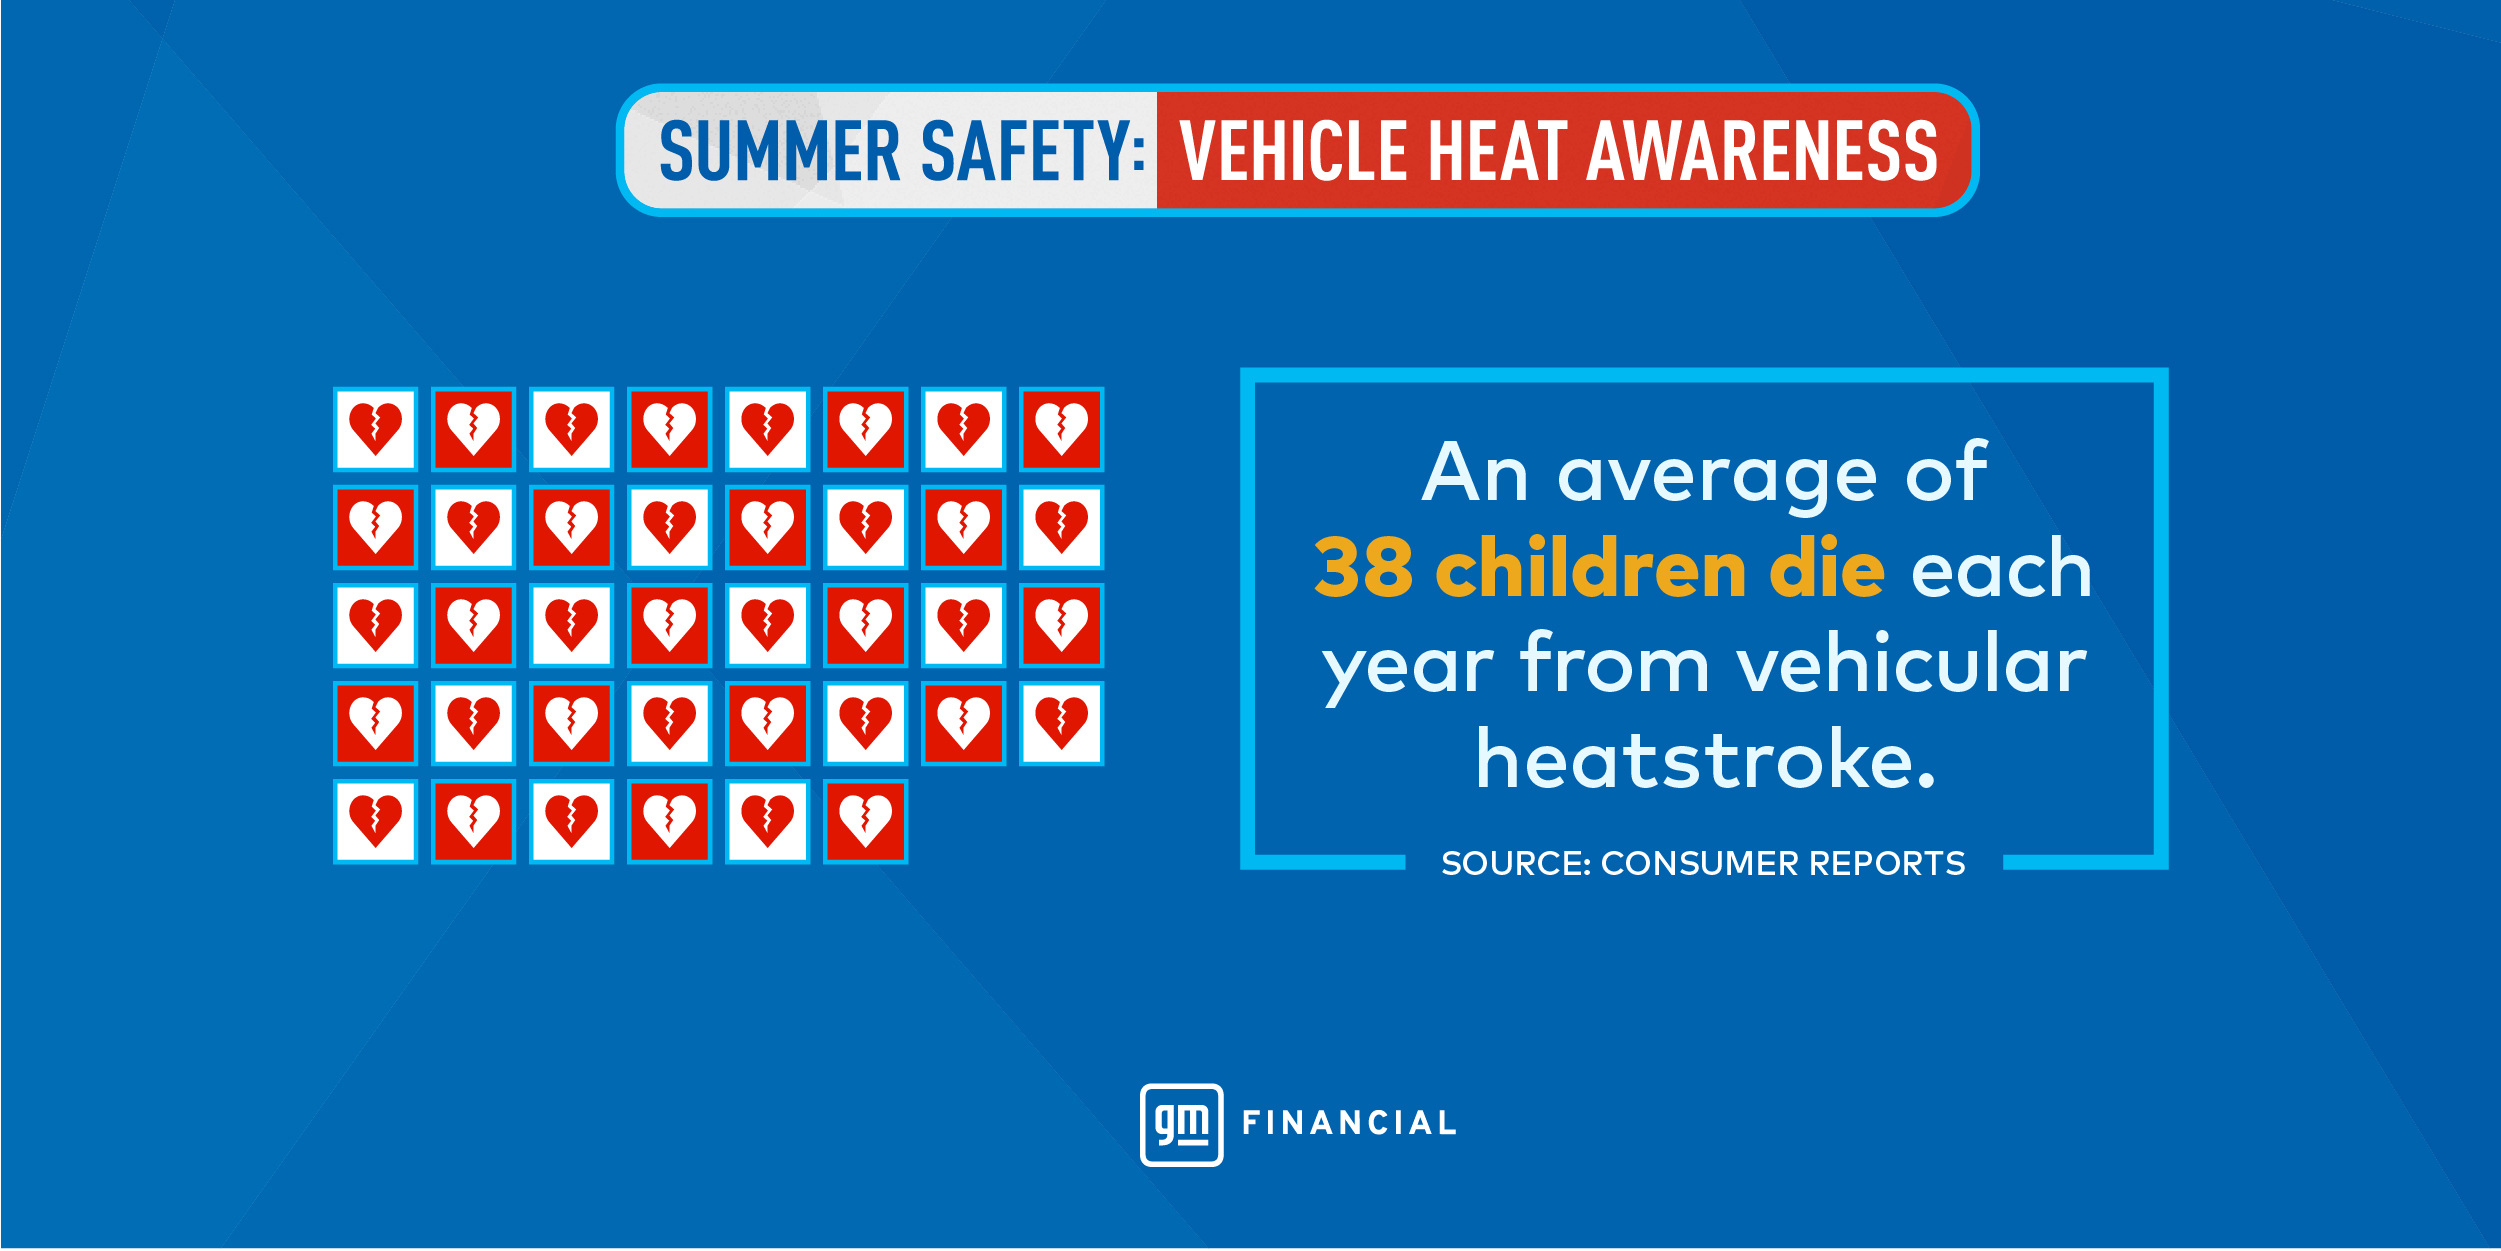 An average of 38 children die each year from vehicular heatstroke.